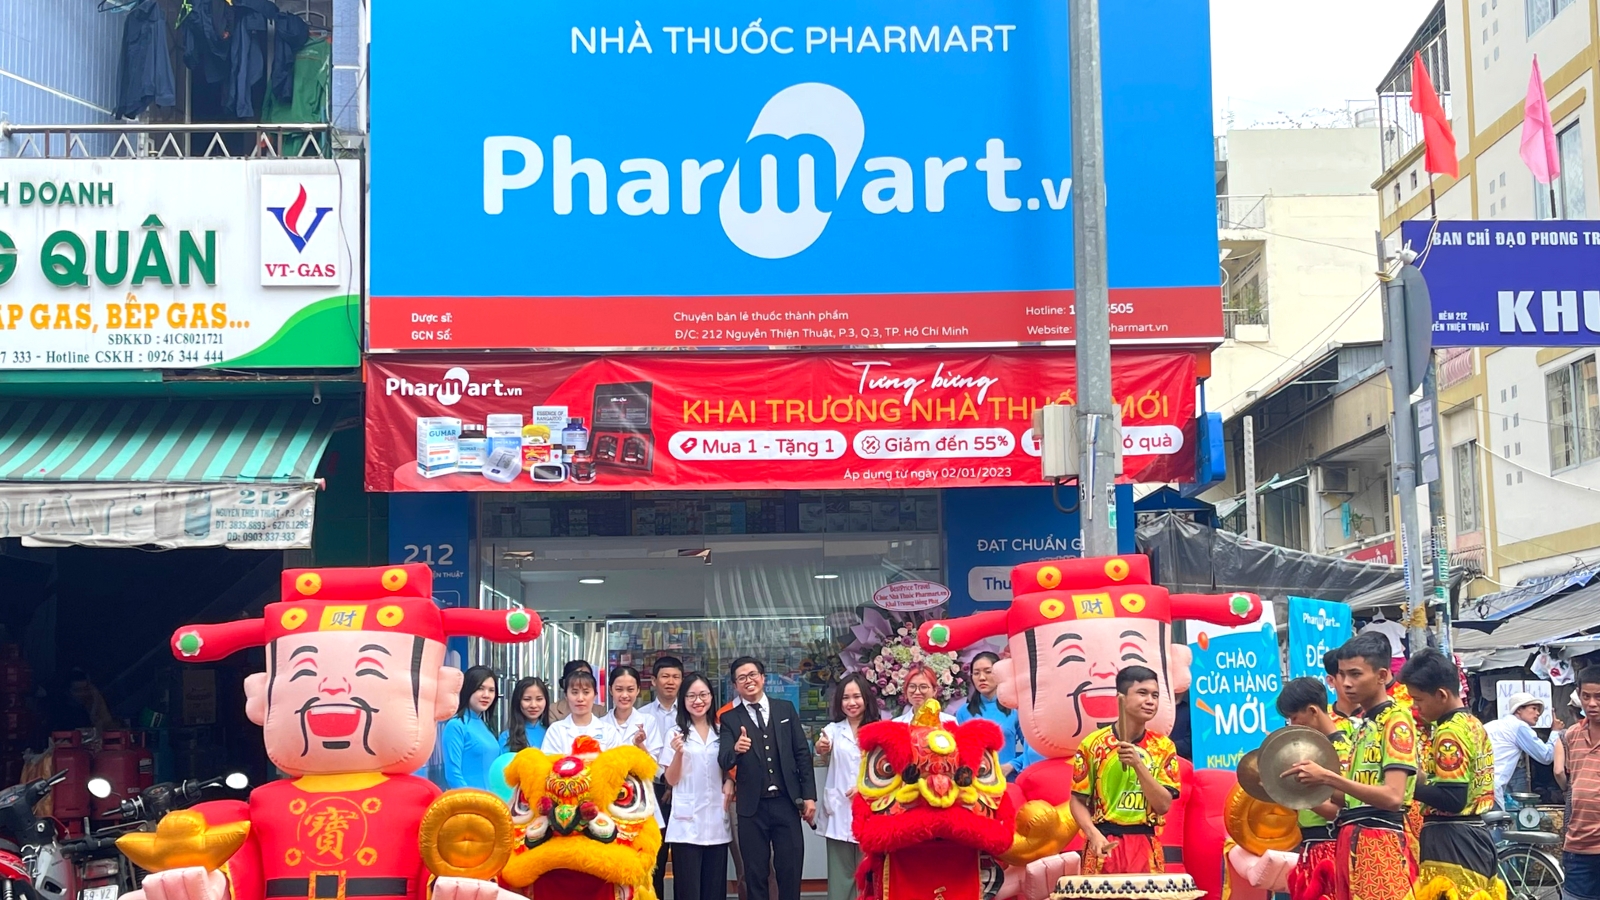 Pharmart tưng bừng khai trương nhà thuốc mới tại TP Hồ Chí Minh